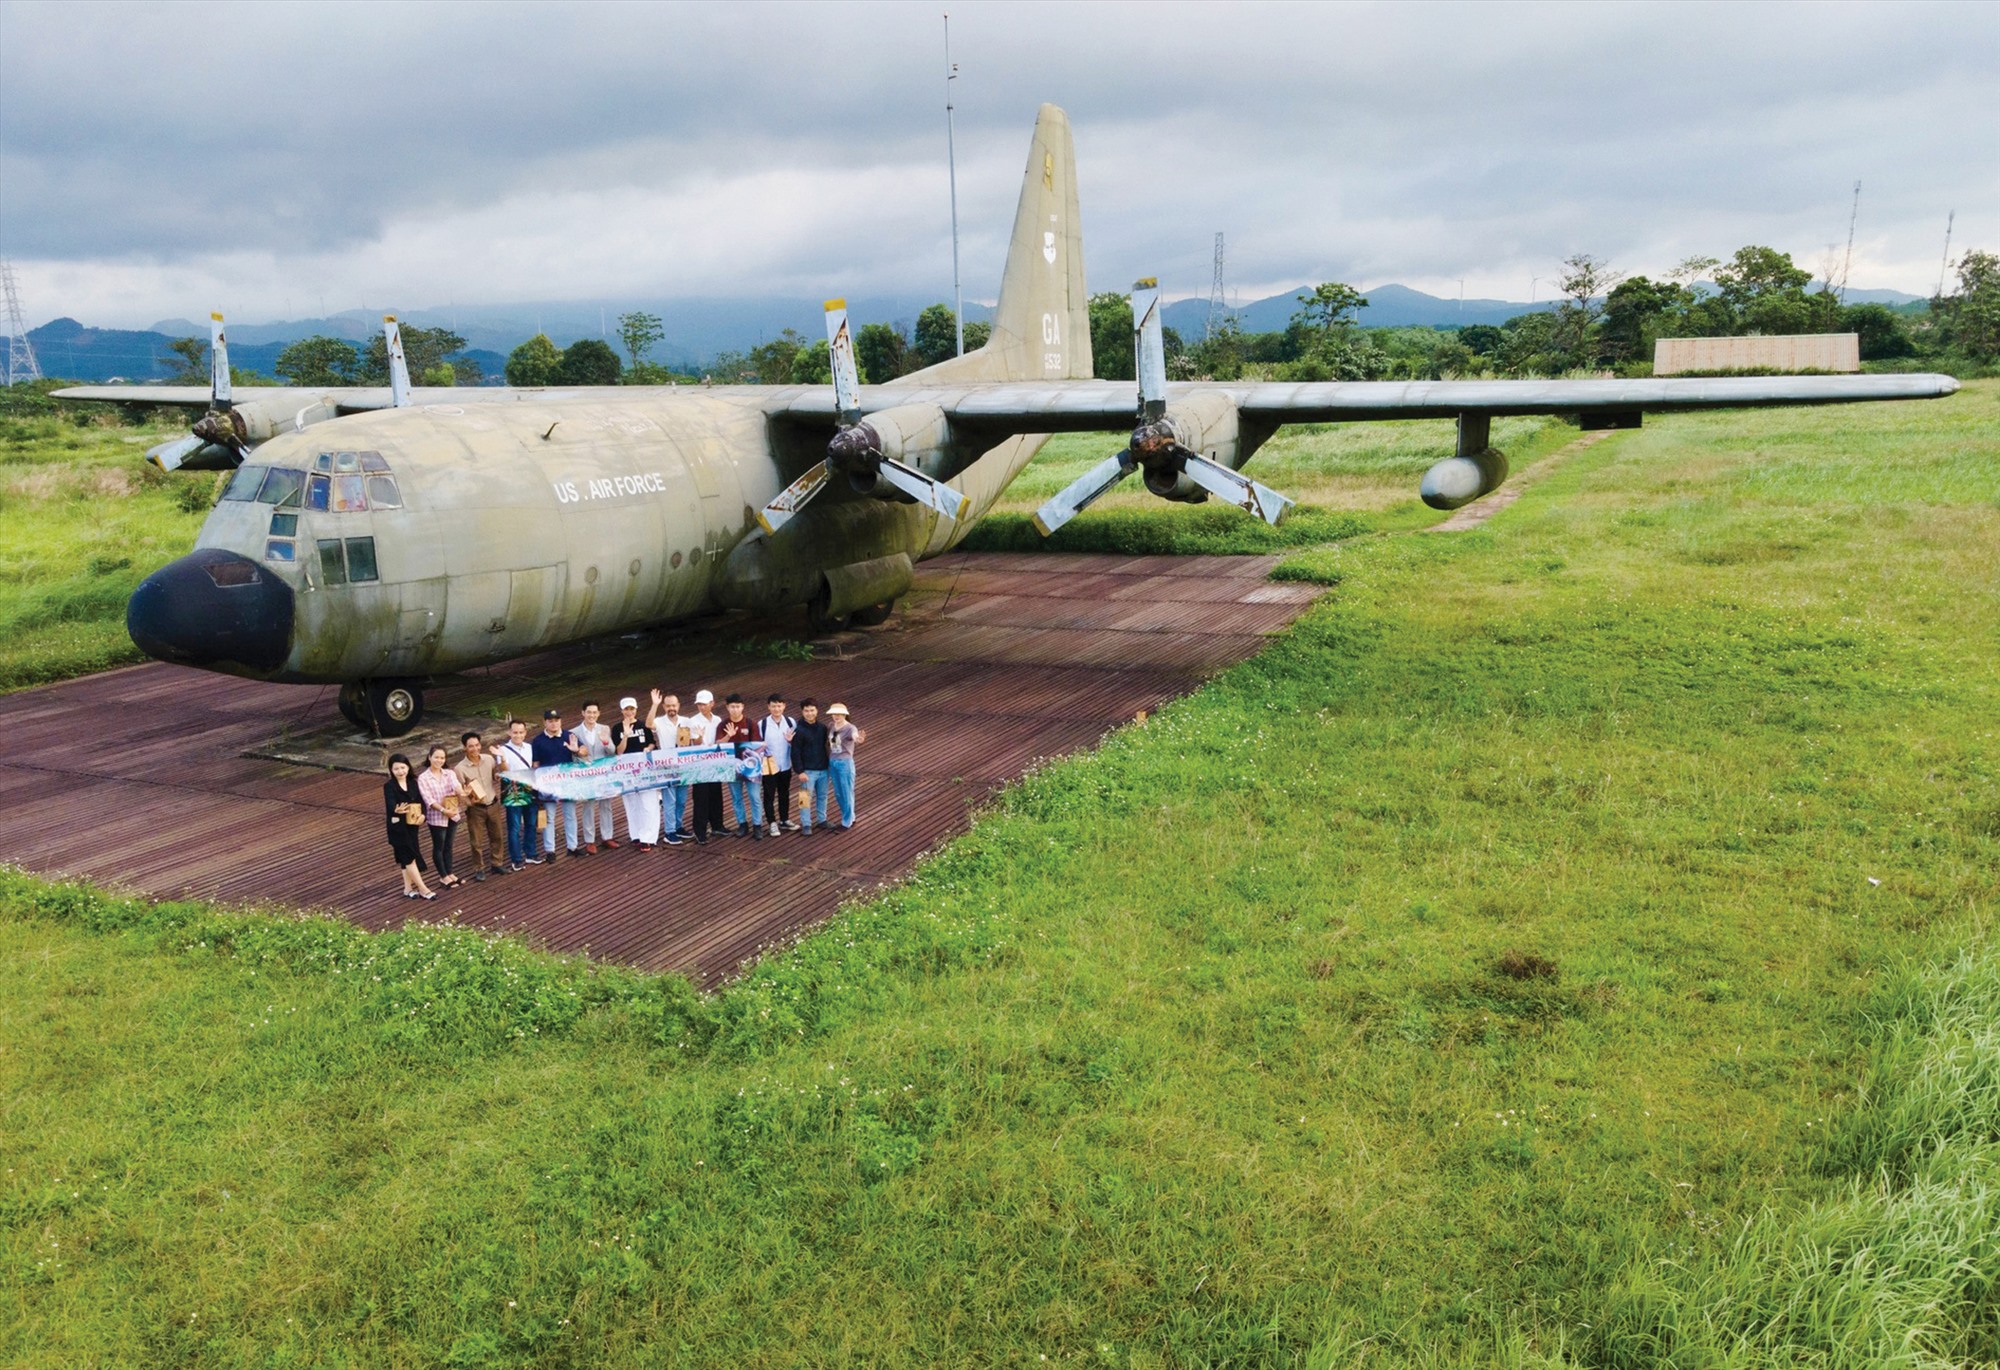 Máy bay C-119 sẽ được đưa về sớm để trưng bày bên cạnh máy bay C-130 (trong ảnh) tại Di tích sân bay Tà Cơn nhằm tạo thêm điểm nhấn mới phục vụ du khách -Ảnh: TÚ LINH